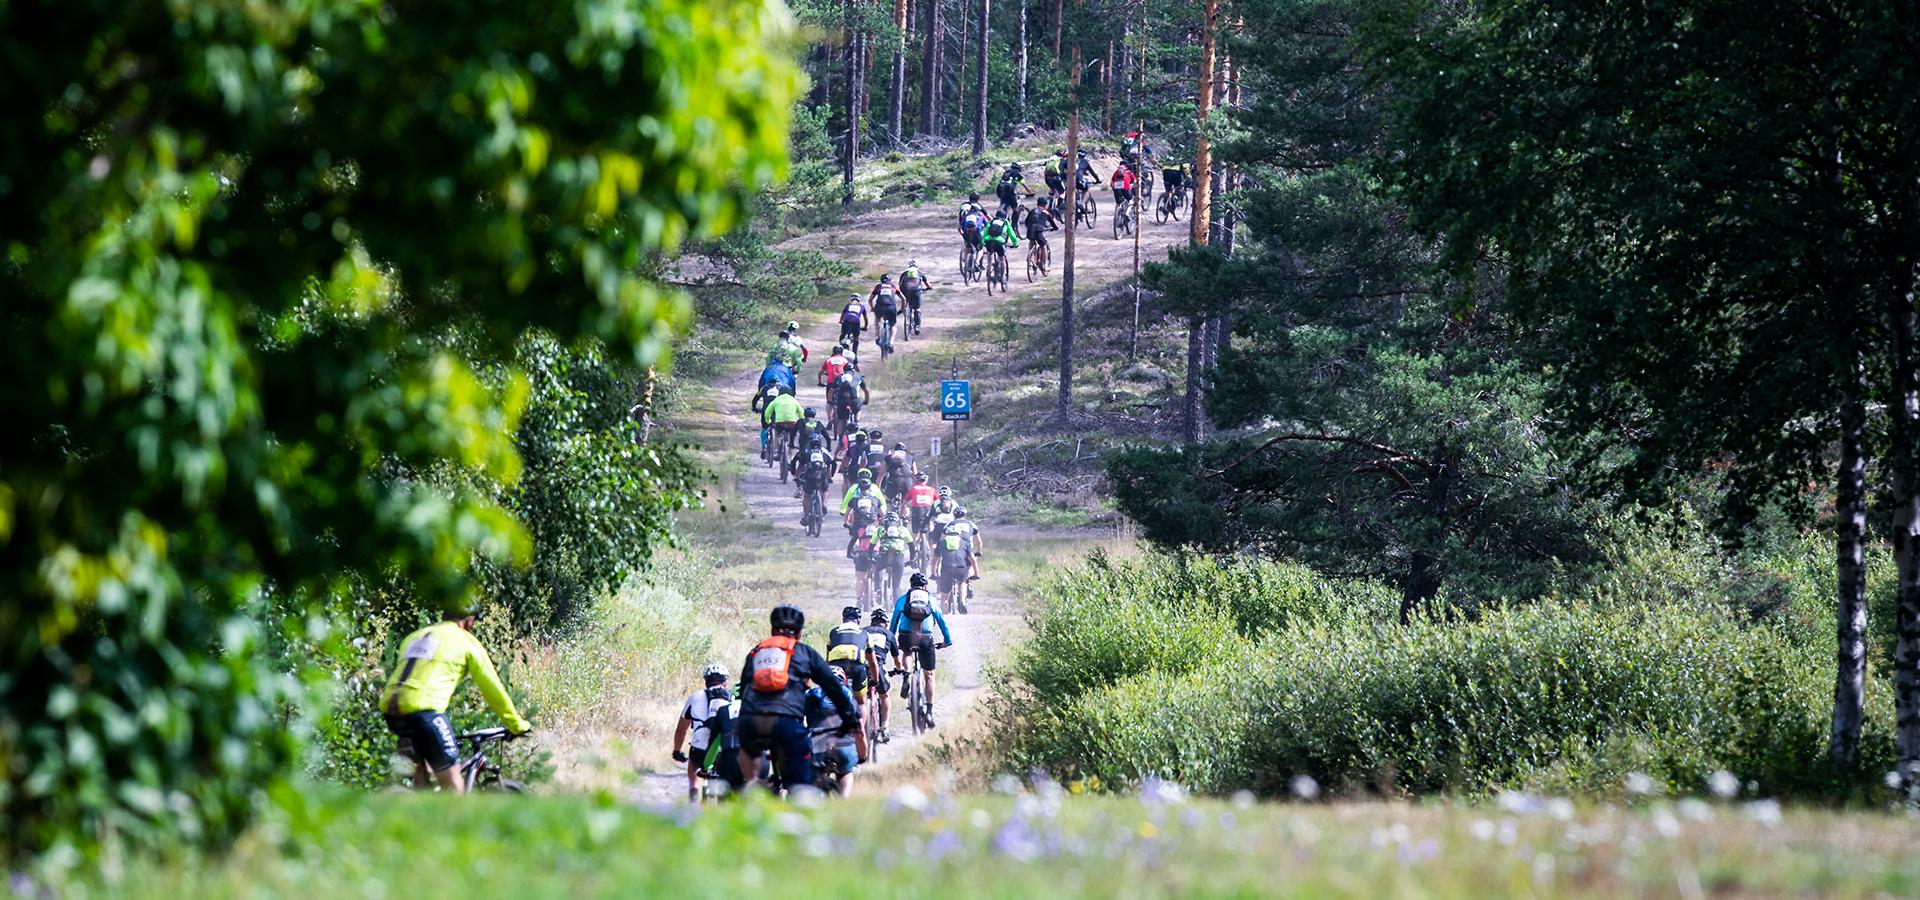 En stor grupp cyklister på en grusväg genom skogen.